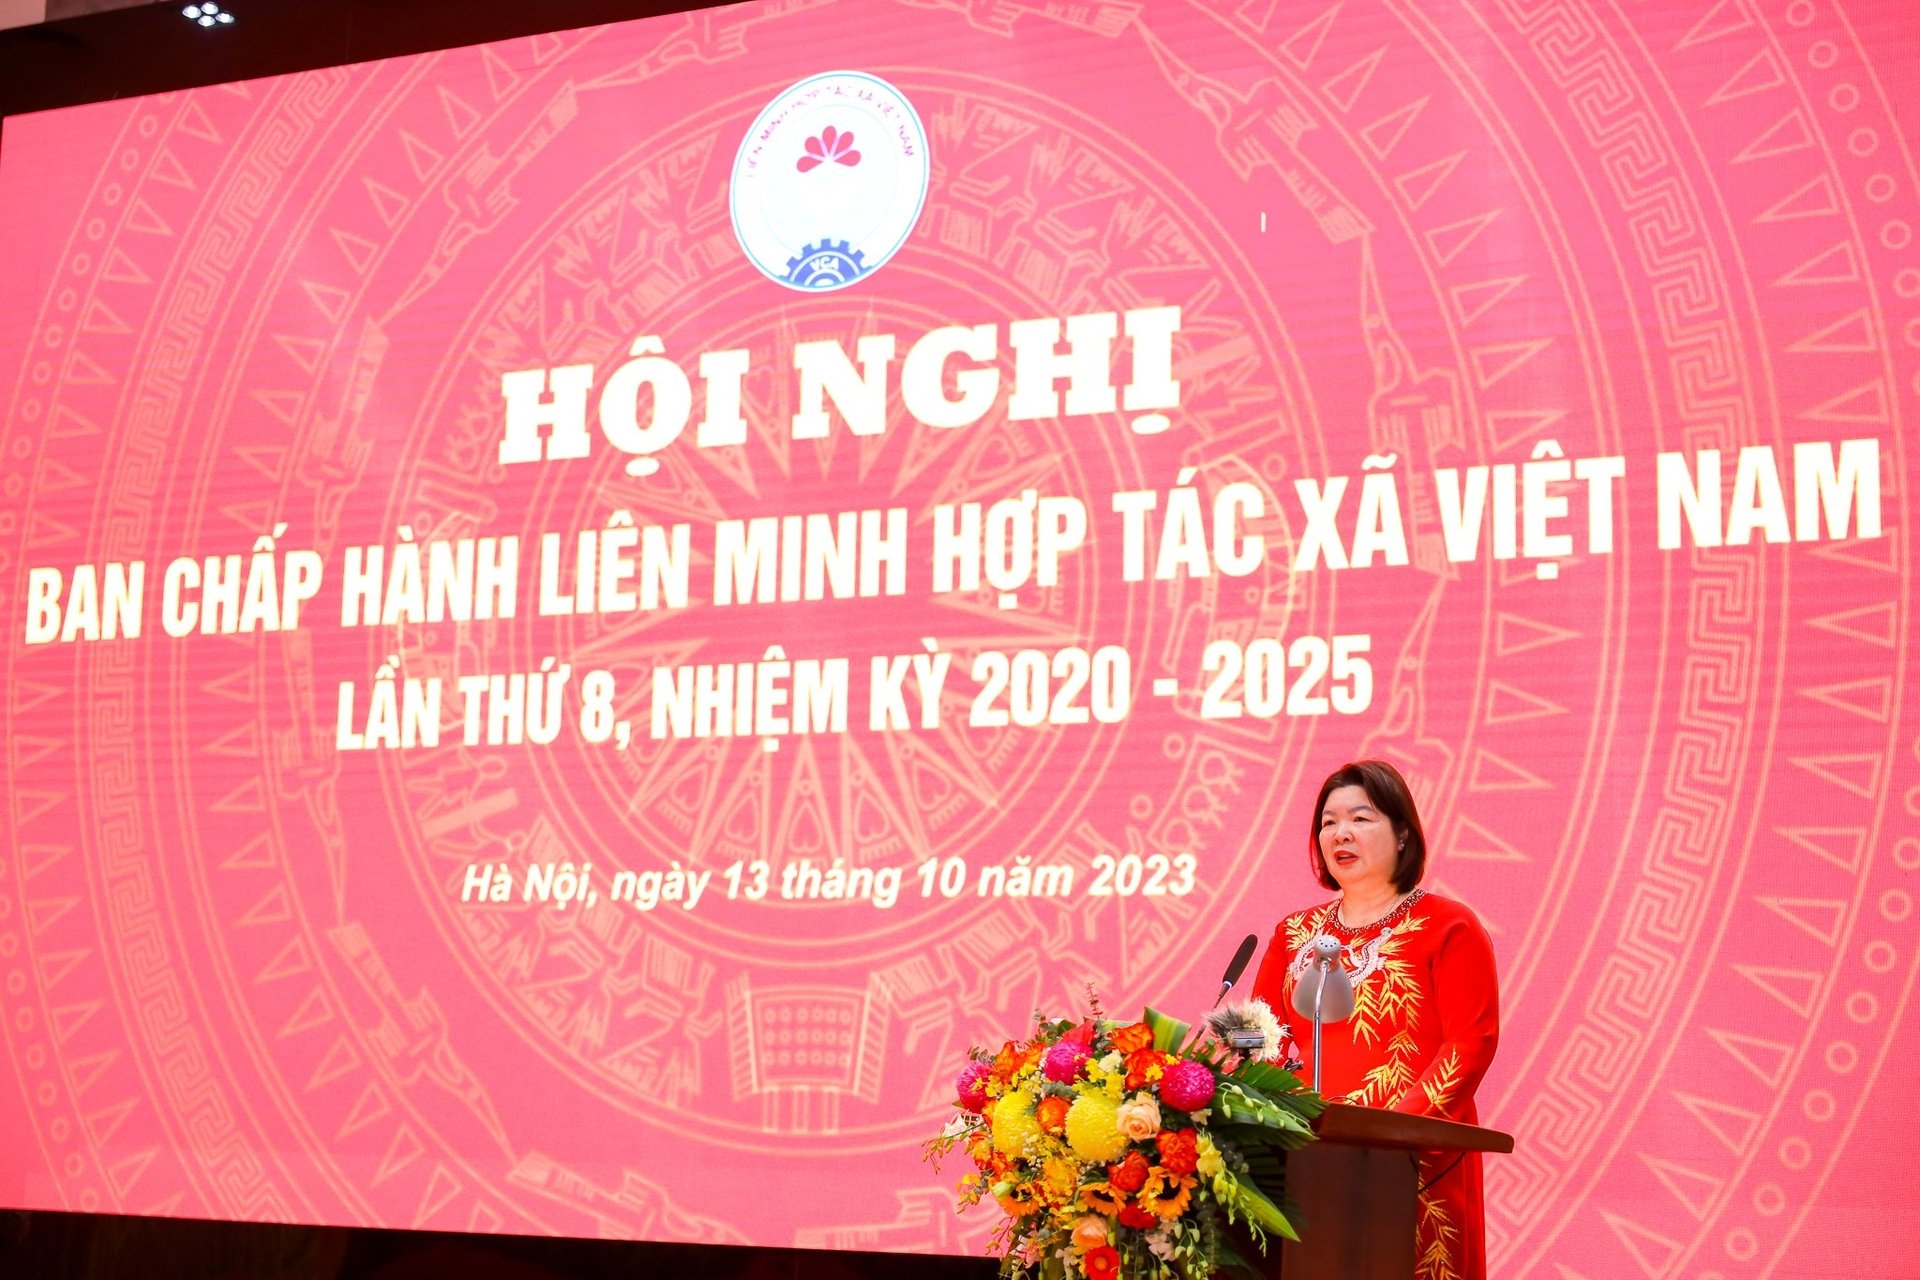 Tân chủ tịch Liên minh HTX Việt Nam Cao Xuân Thu Vân. Ảnh: Liên minh HTX Việt Nam.